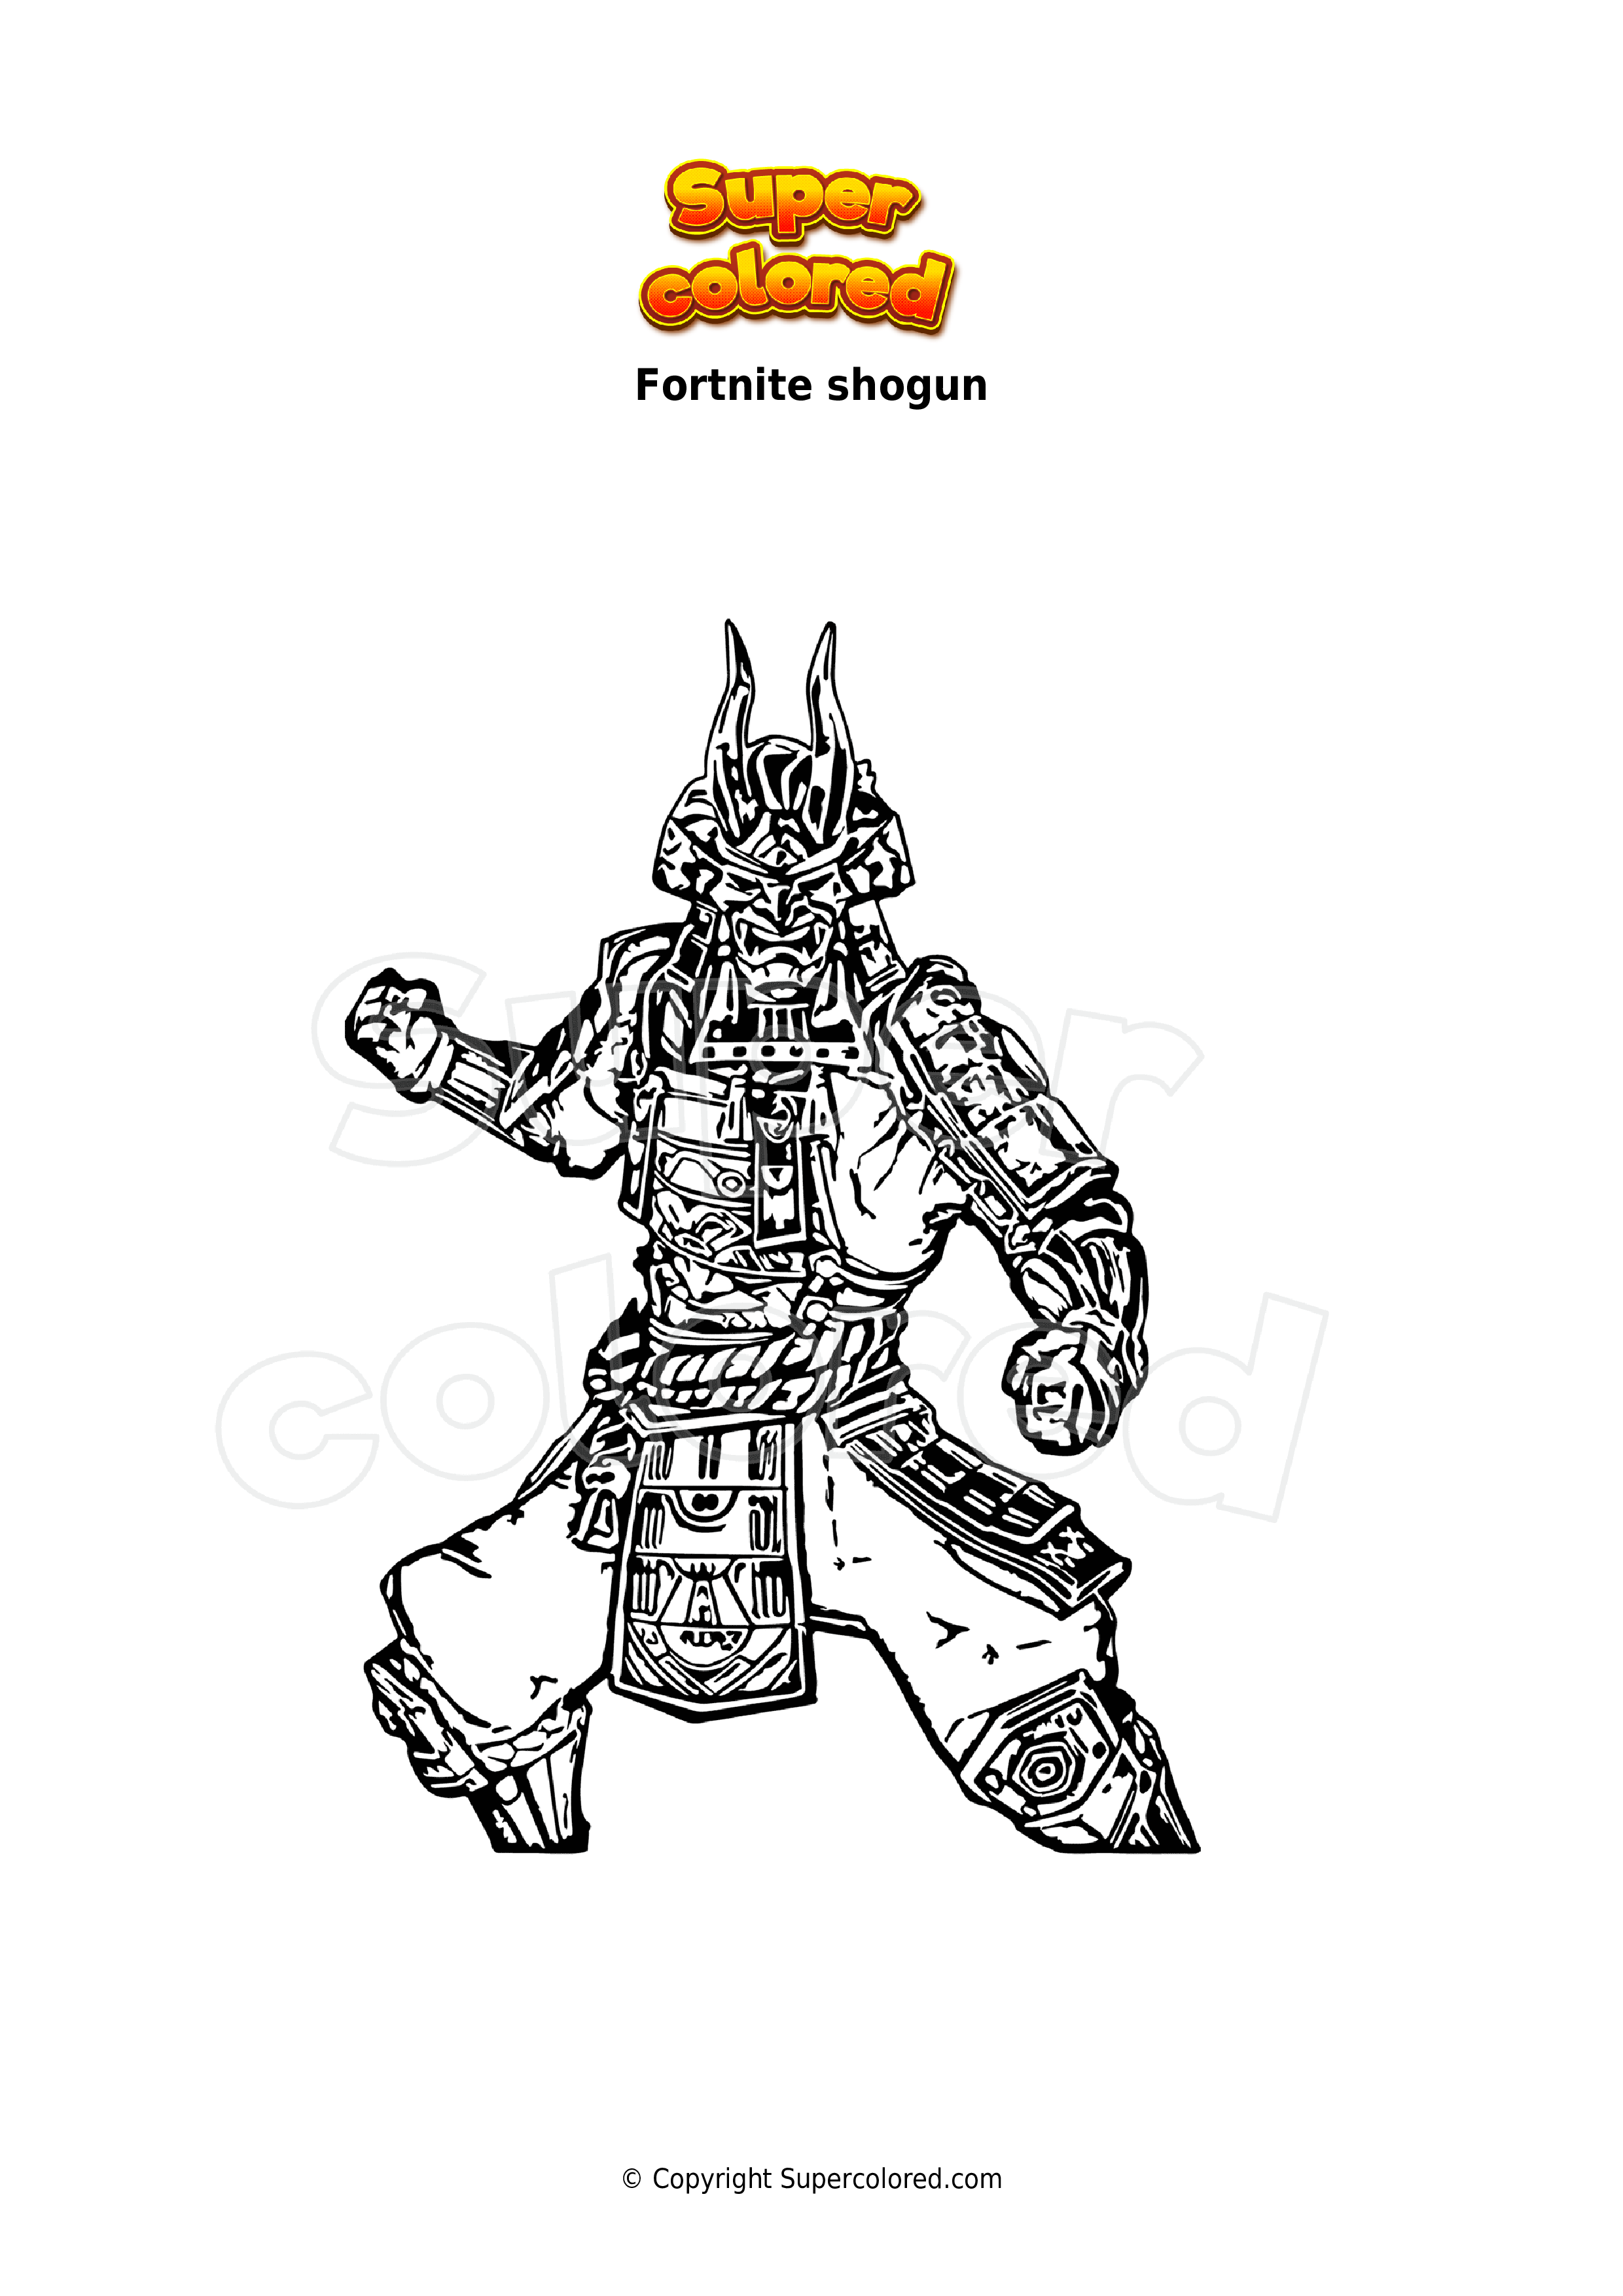 Dibujo para colorear Fortnite shogun - Supercolored.com